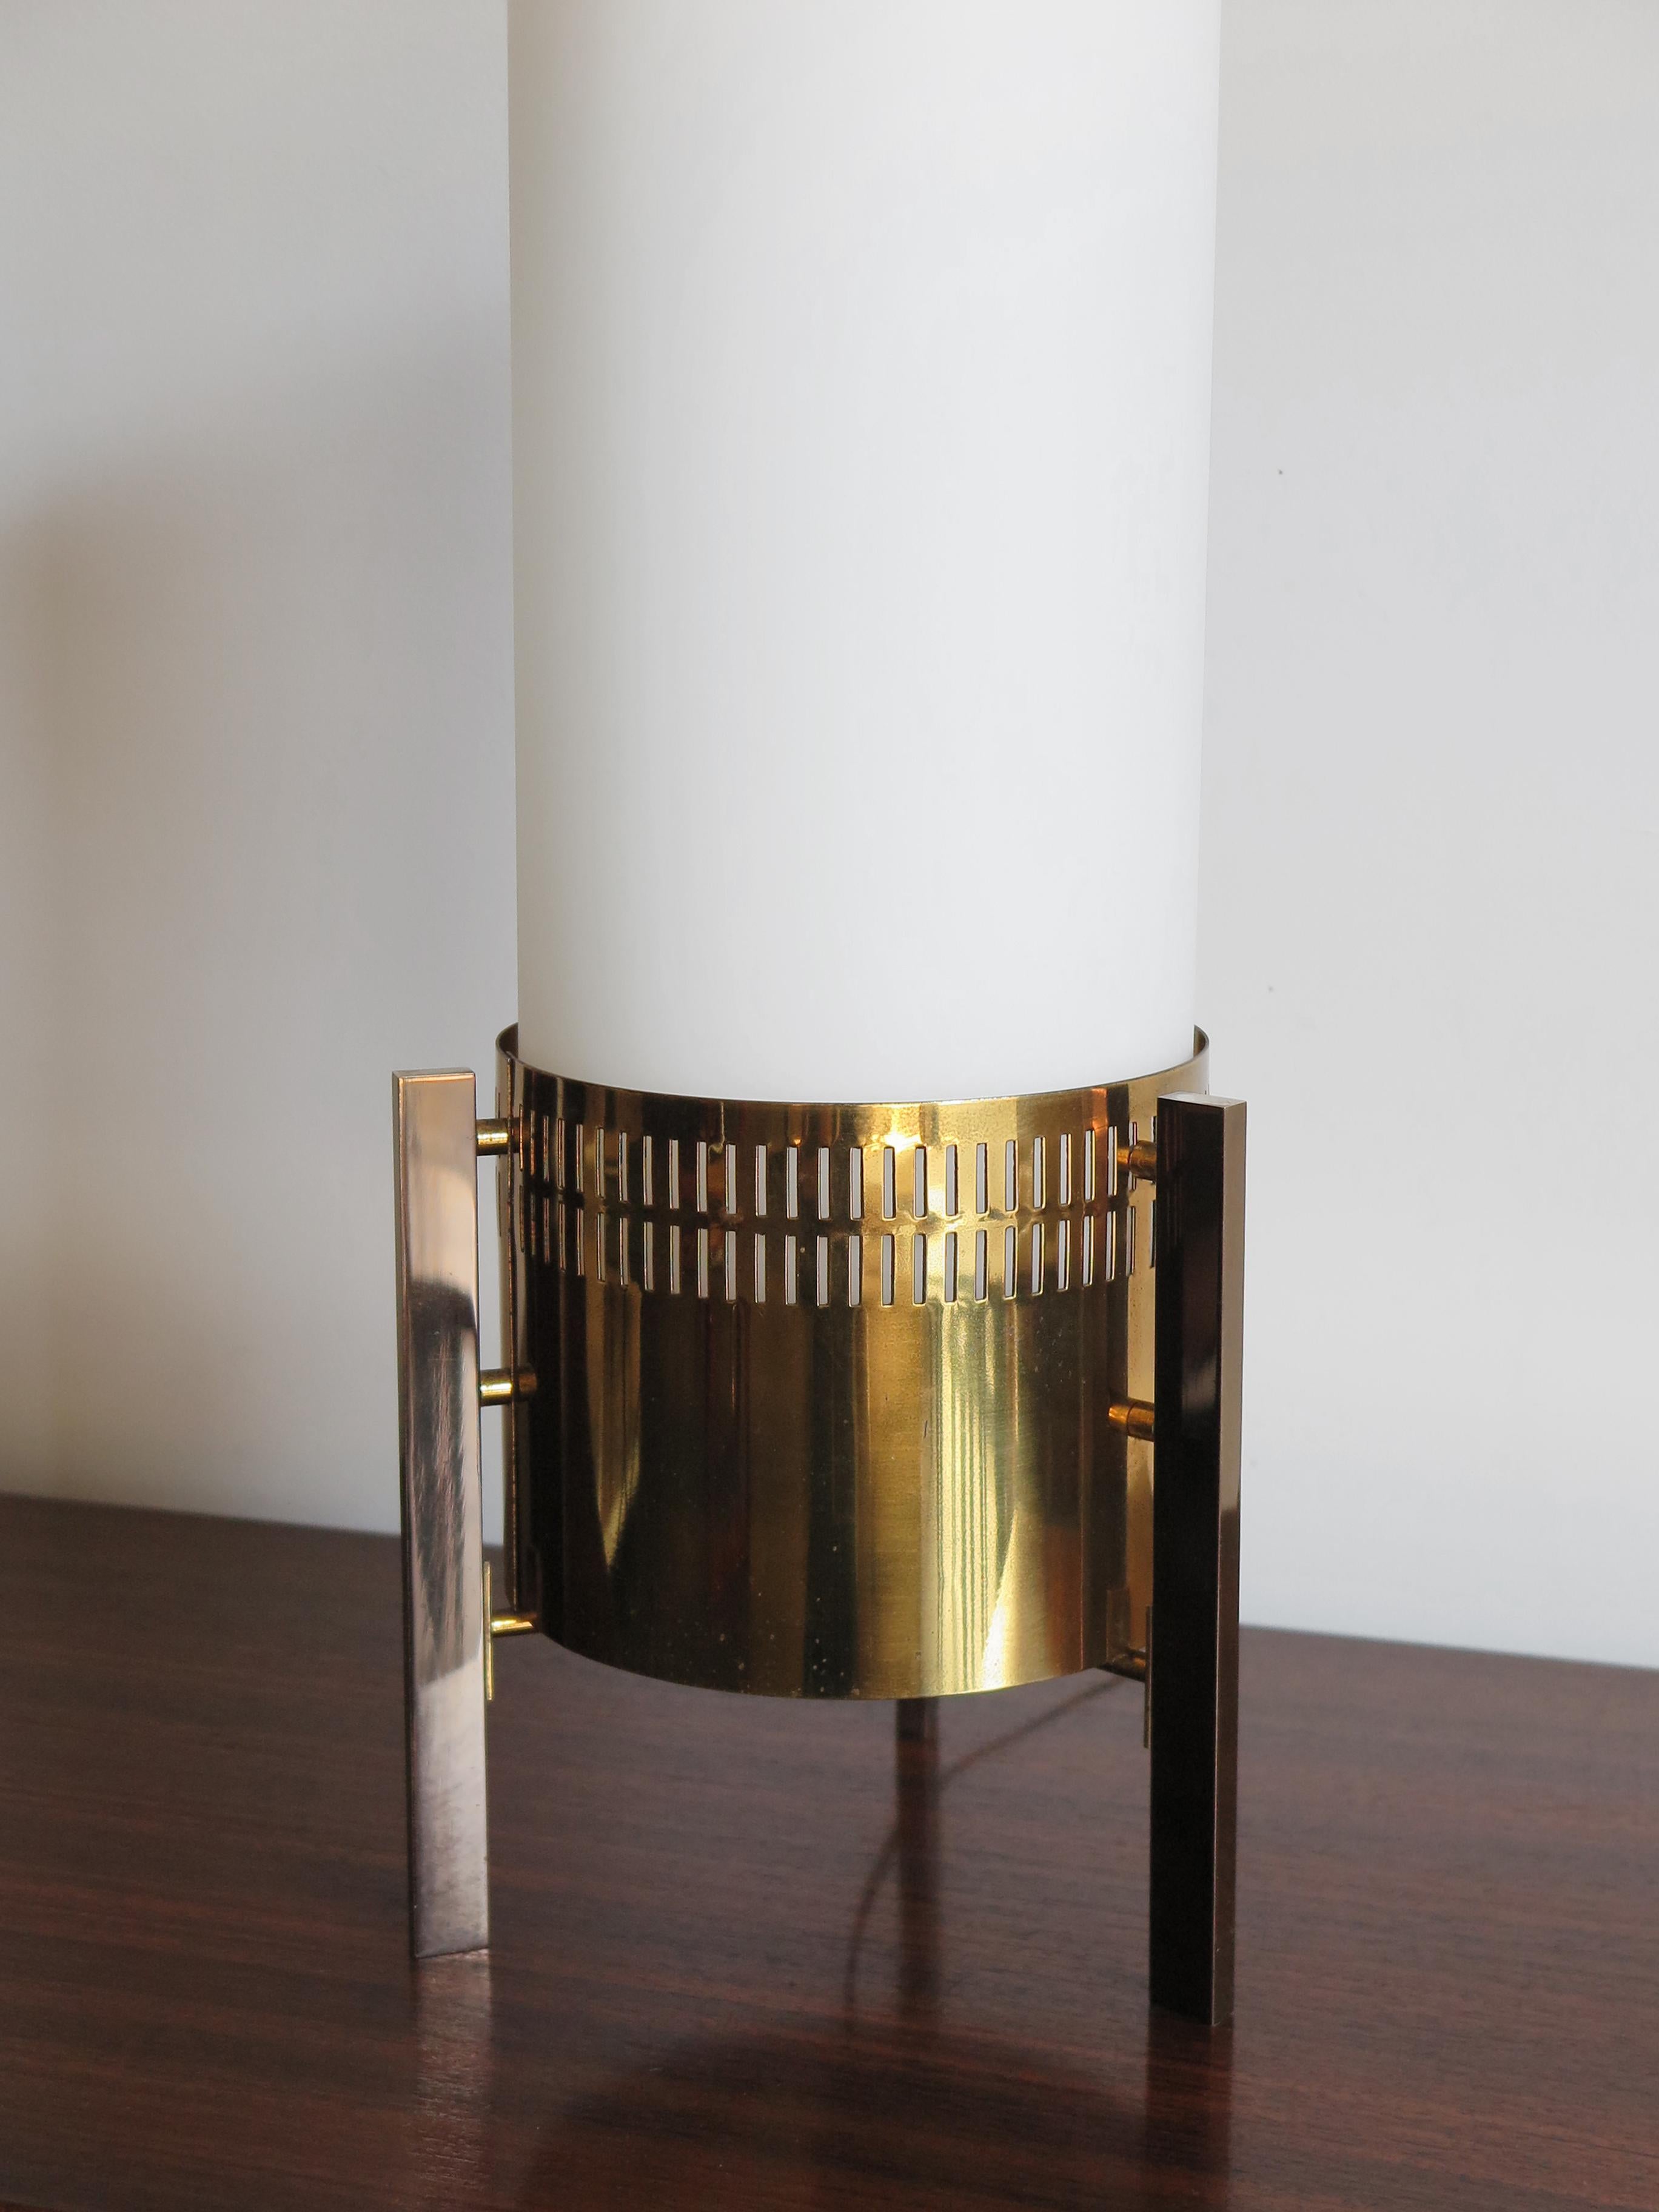 Stilnovo Midcentury Italian Brass Glass Table Lamp, Floor Lamp 1950s For Sale 6